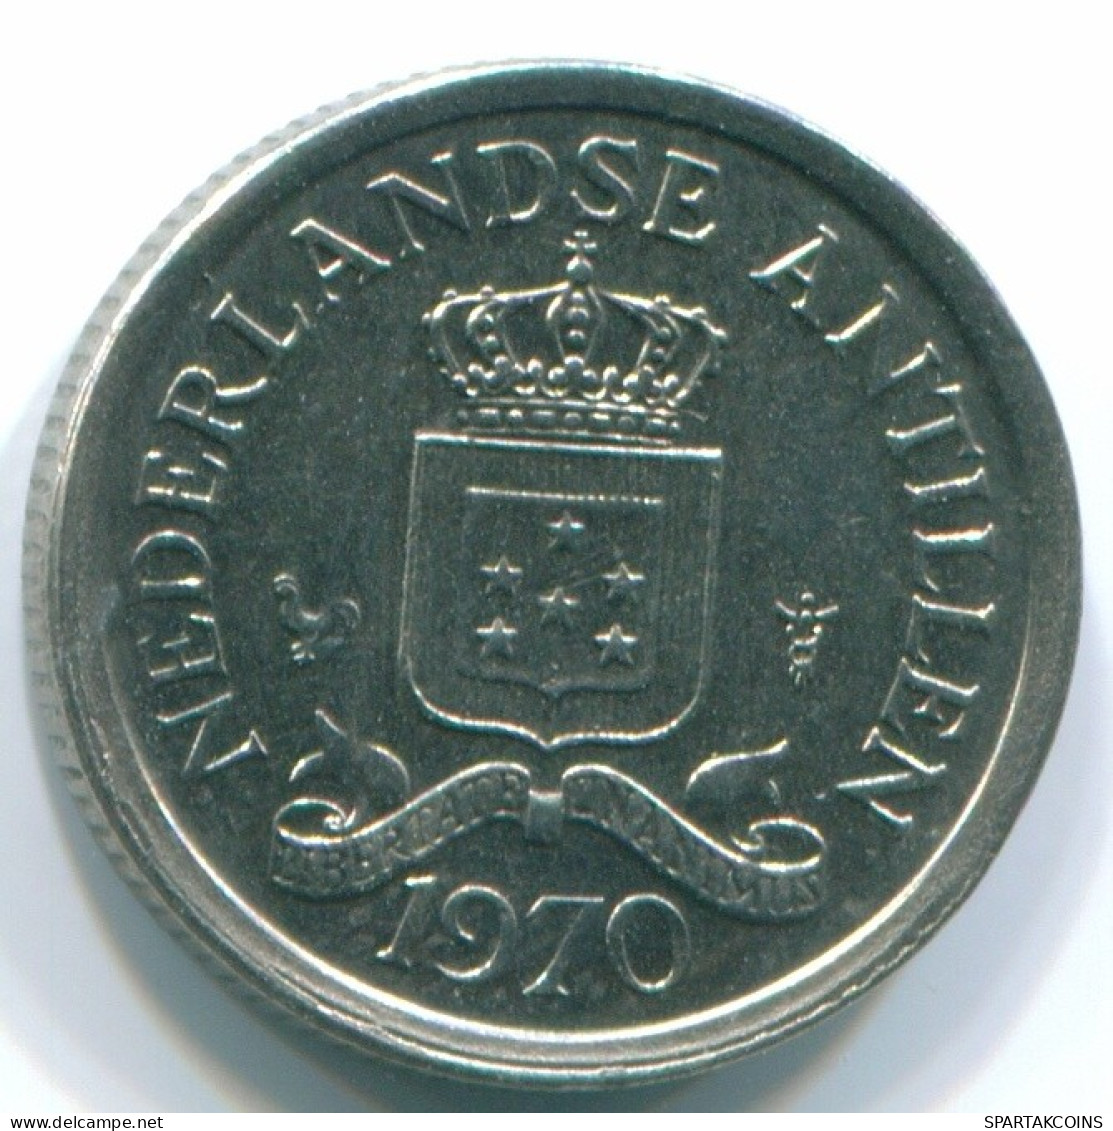 10 CENTS 1970 NIEDERLÄNDISCHE ANTILLEN Nickel Koloniale Münze #S13341.D.A - Antillas Neerlandesas